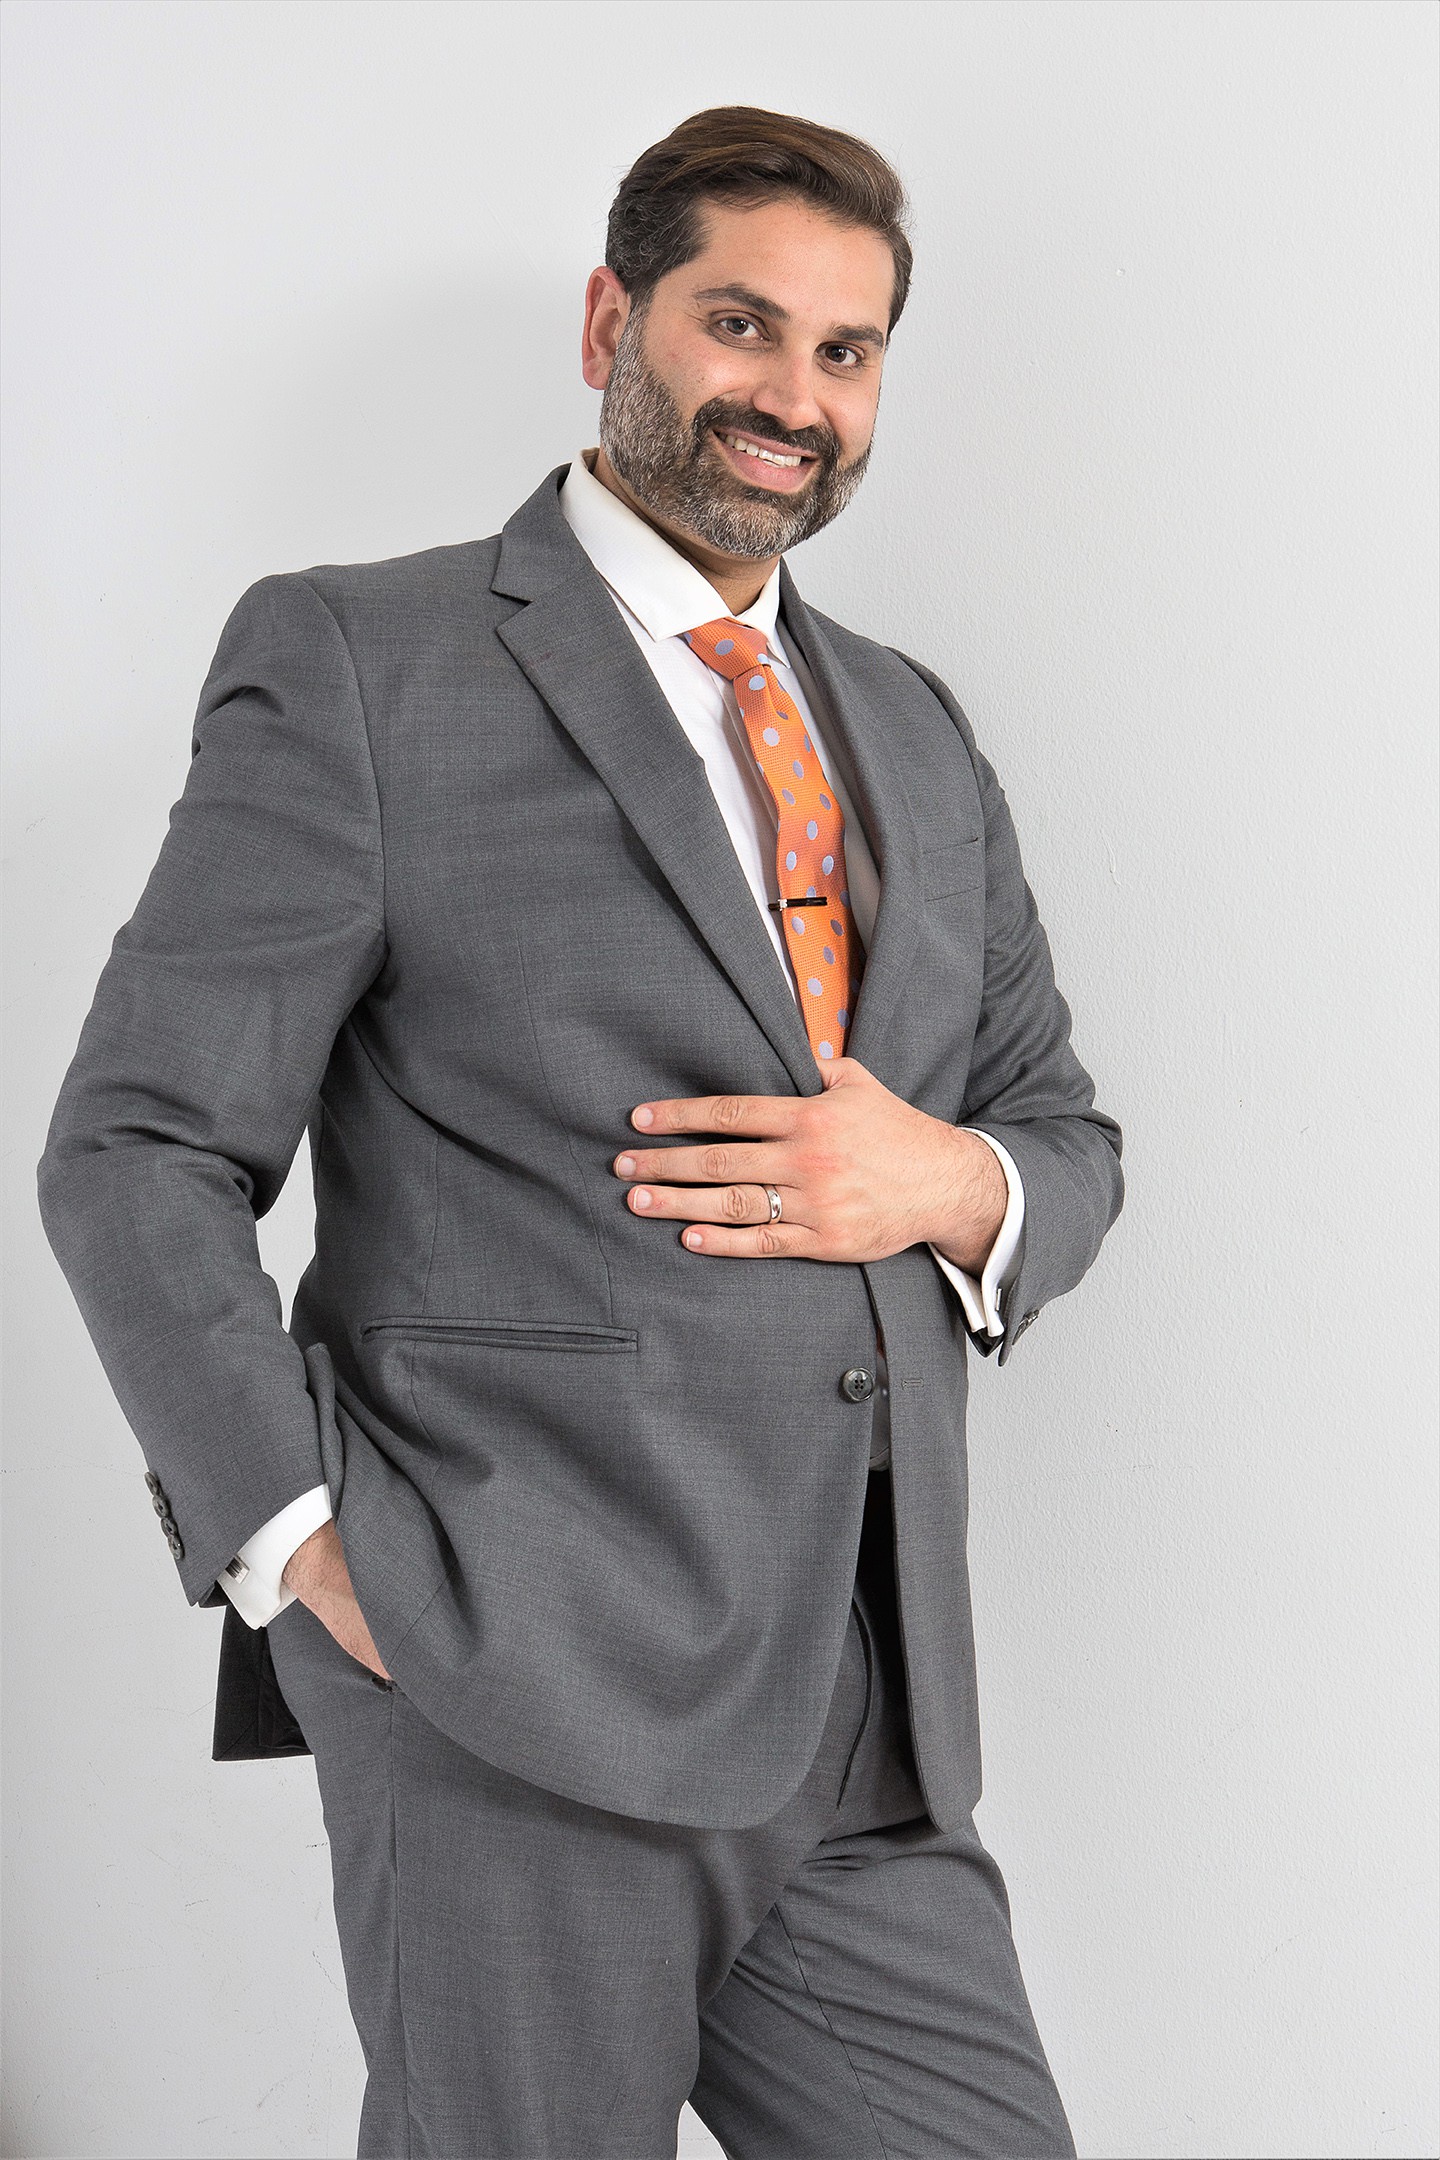 Dr. Hamed Taheri